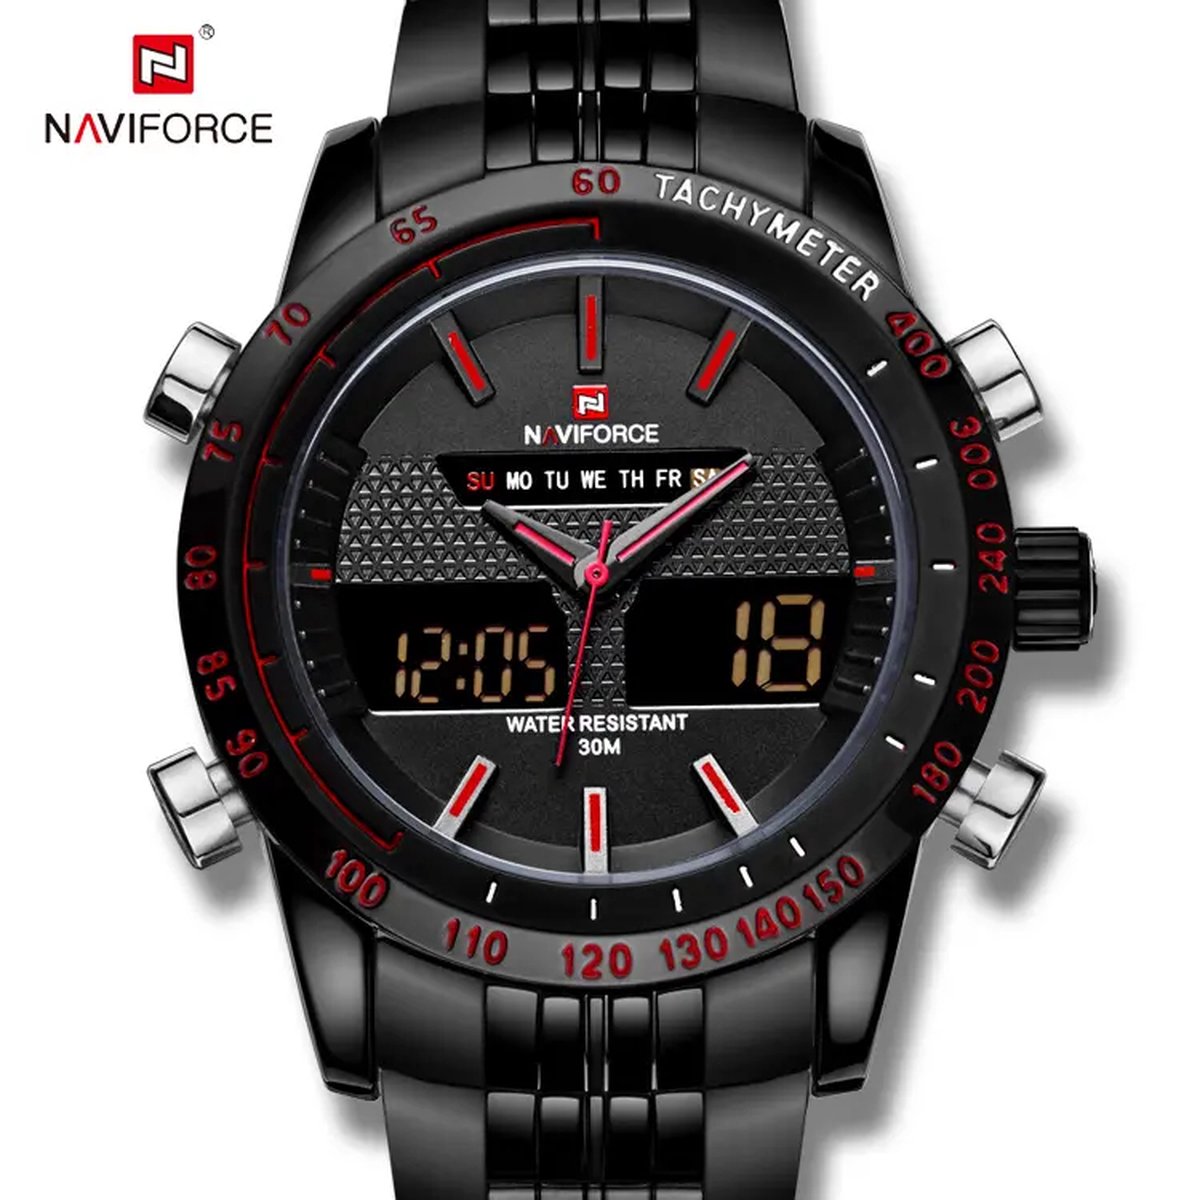 NAVIFORCE horloge voor mannen, met zwarte metalen polsband, zwarte uurwerkkast en zwarte wijzerplaat met rode wijzers ( model 9024 BBR ), verpakt in mooie geschenkdoos